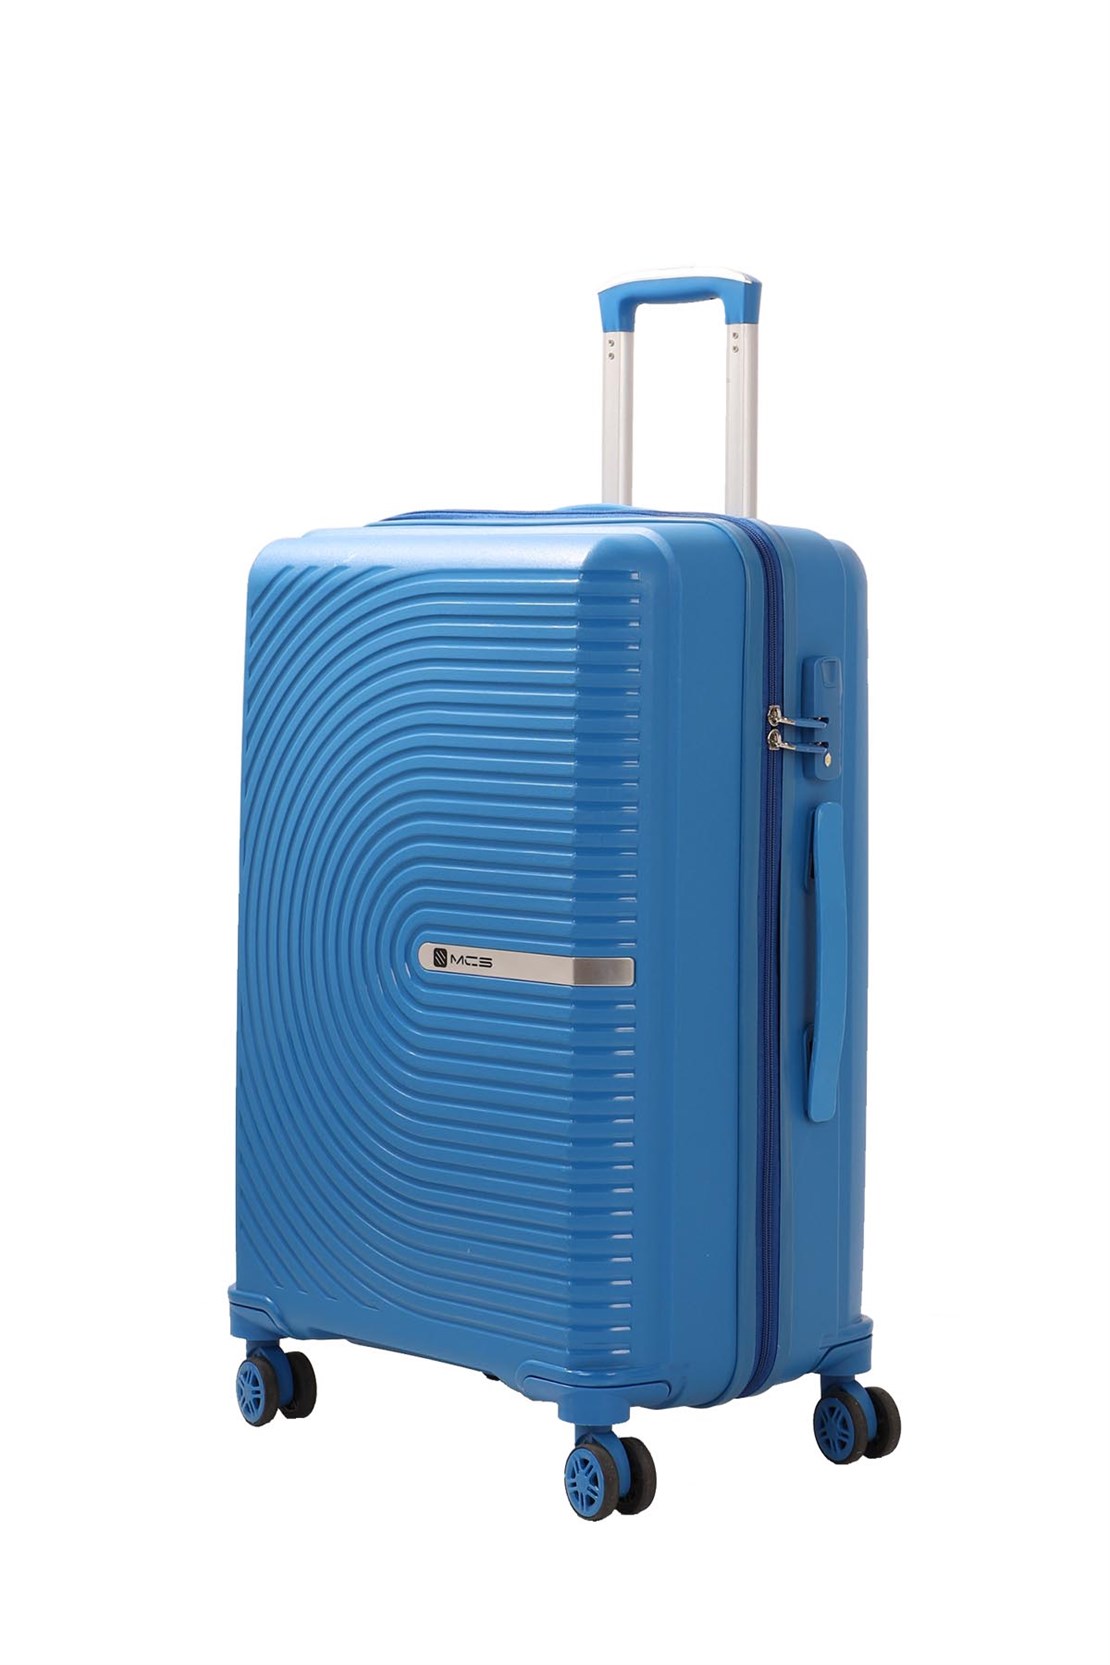 Набор чемоданов из полипропилена SET MCS V374 - 4